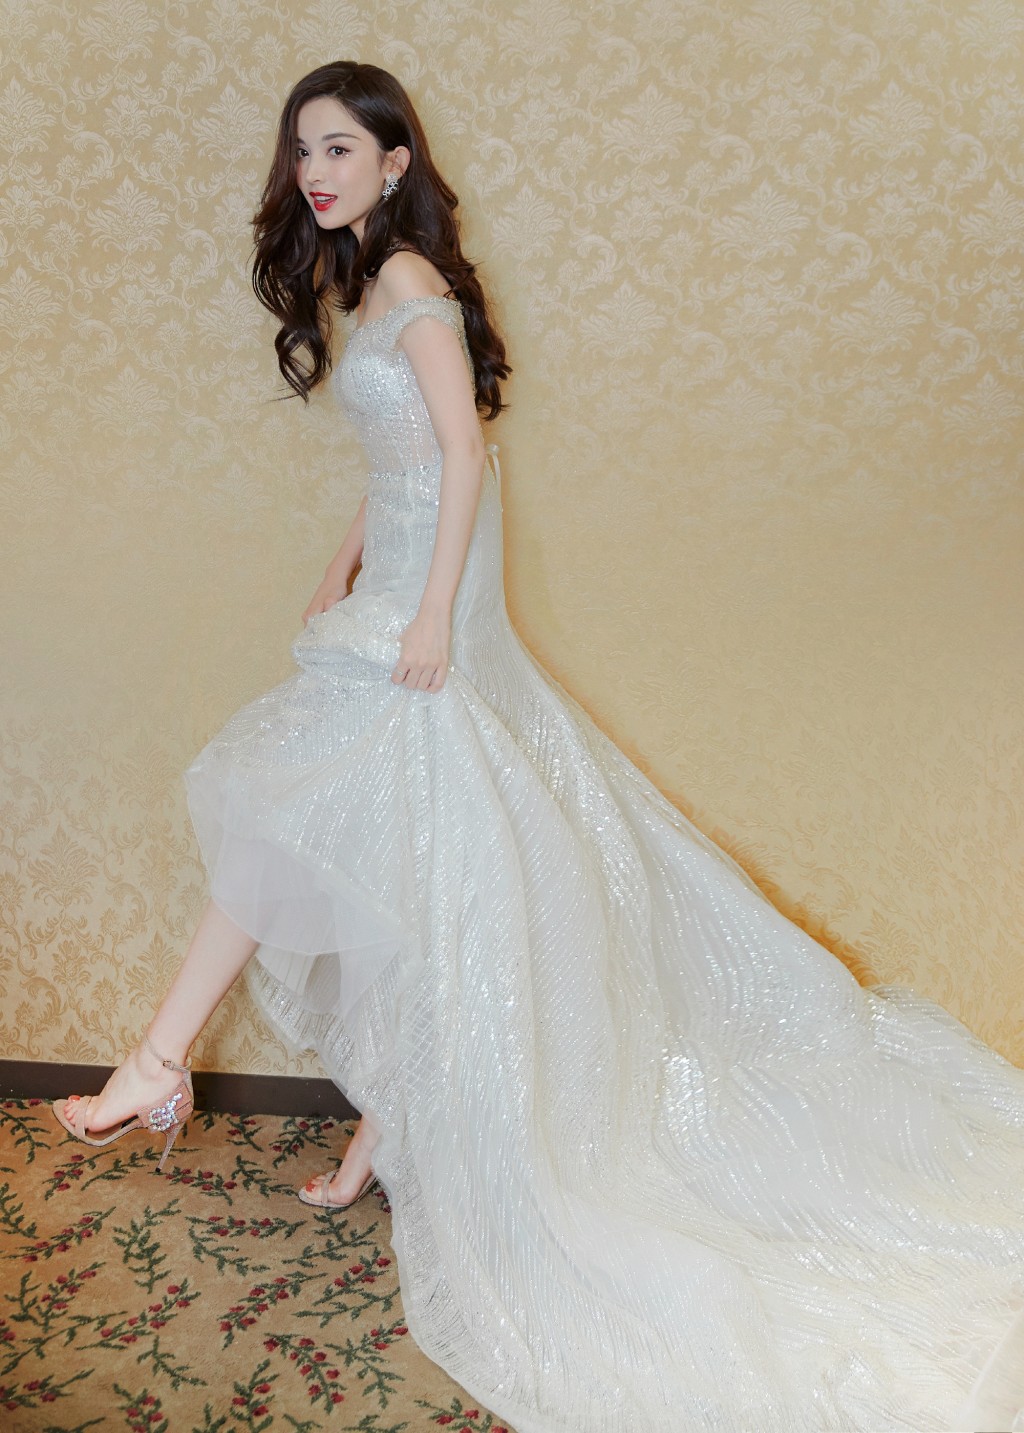 古力娜扎钻石礼裙优雅迷人写真图片